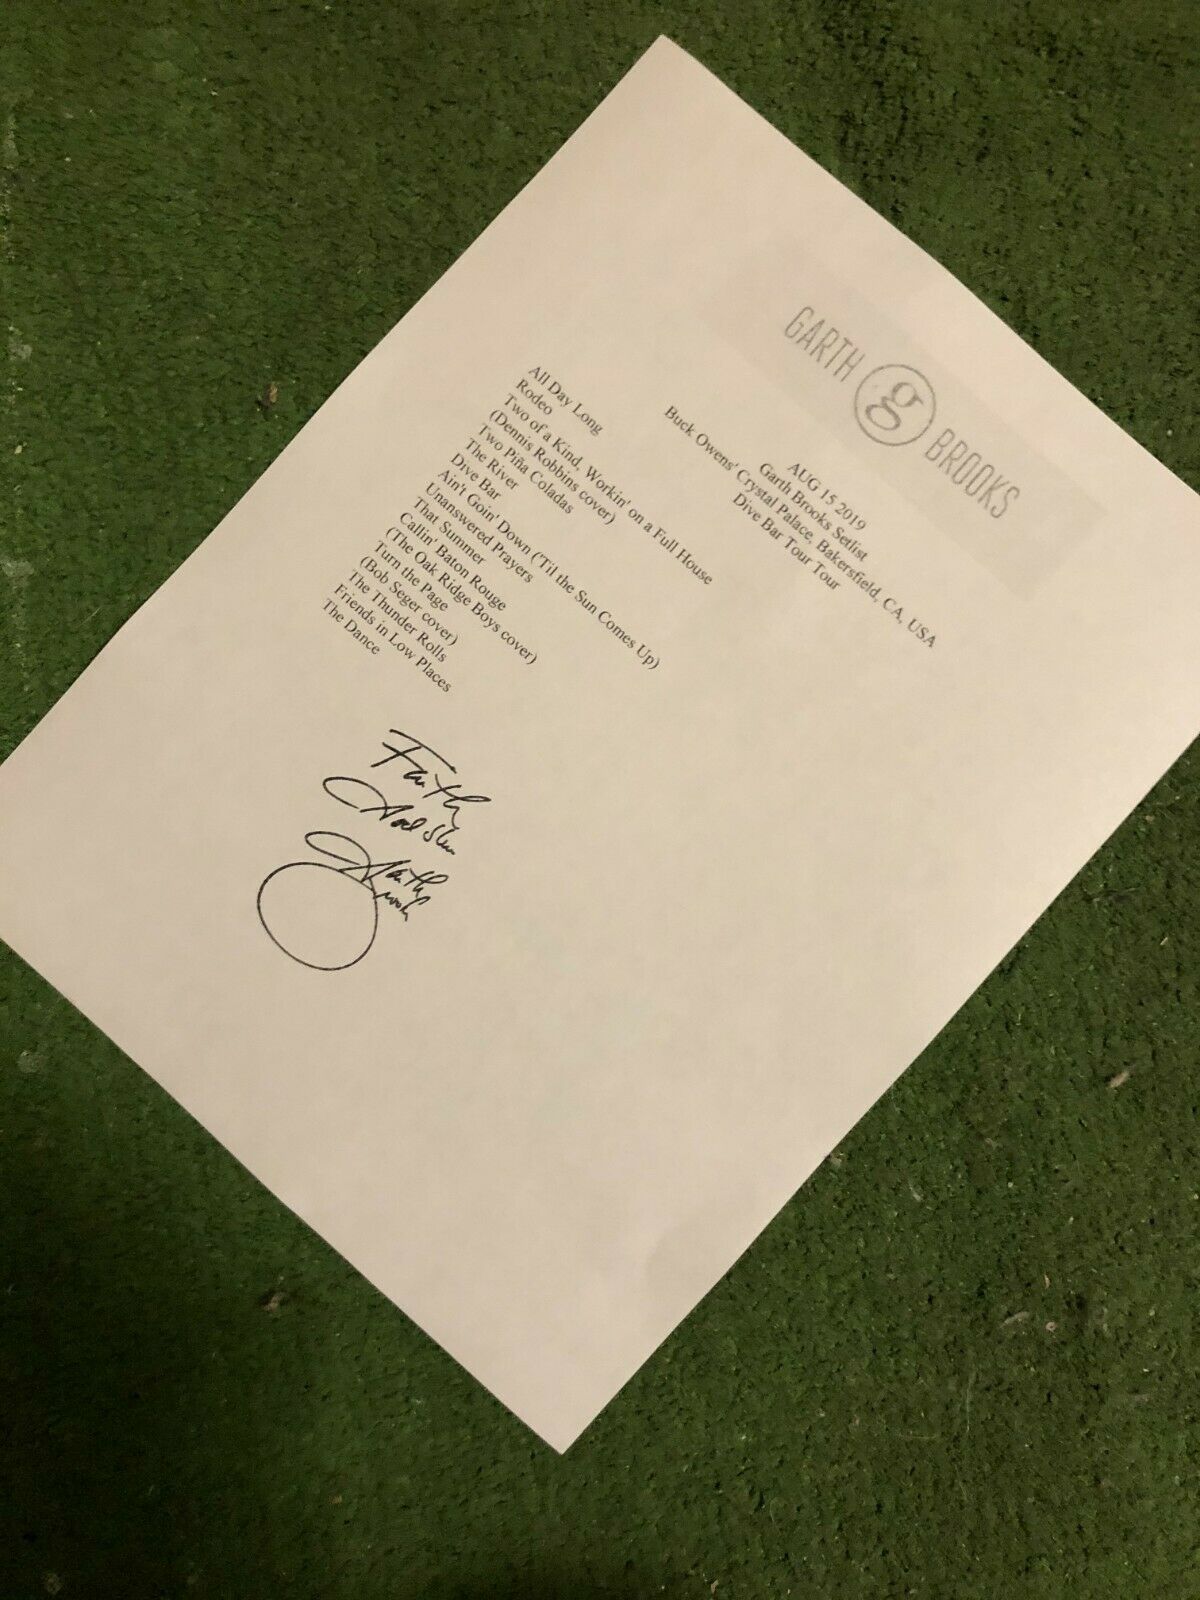 Garth Brooks Setlist Reprint From Dive Bar Tour 2019